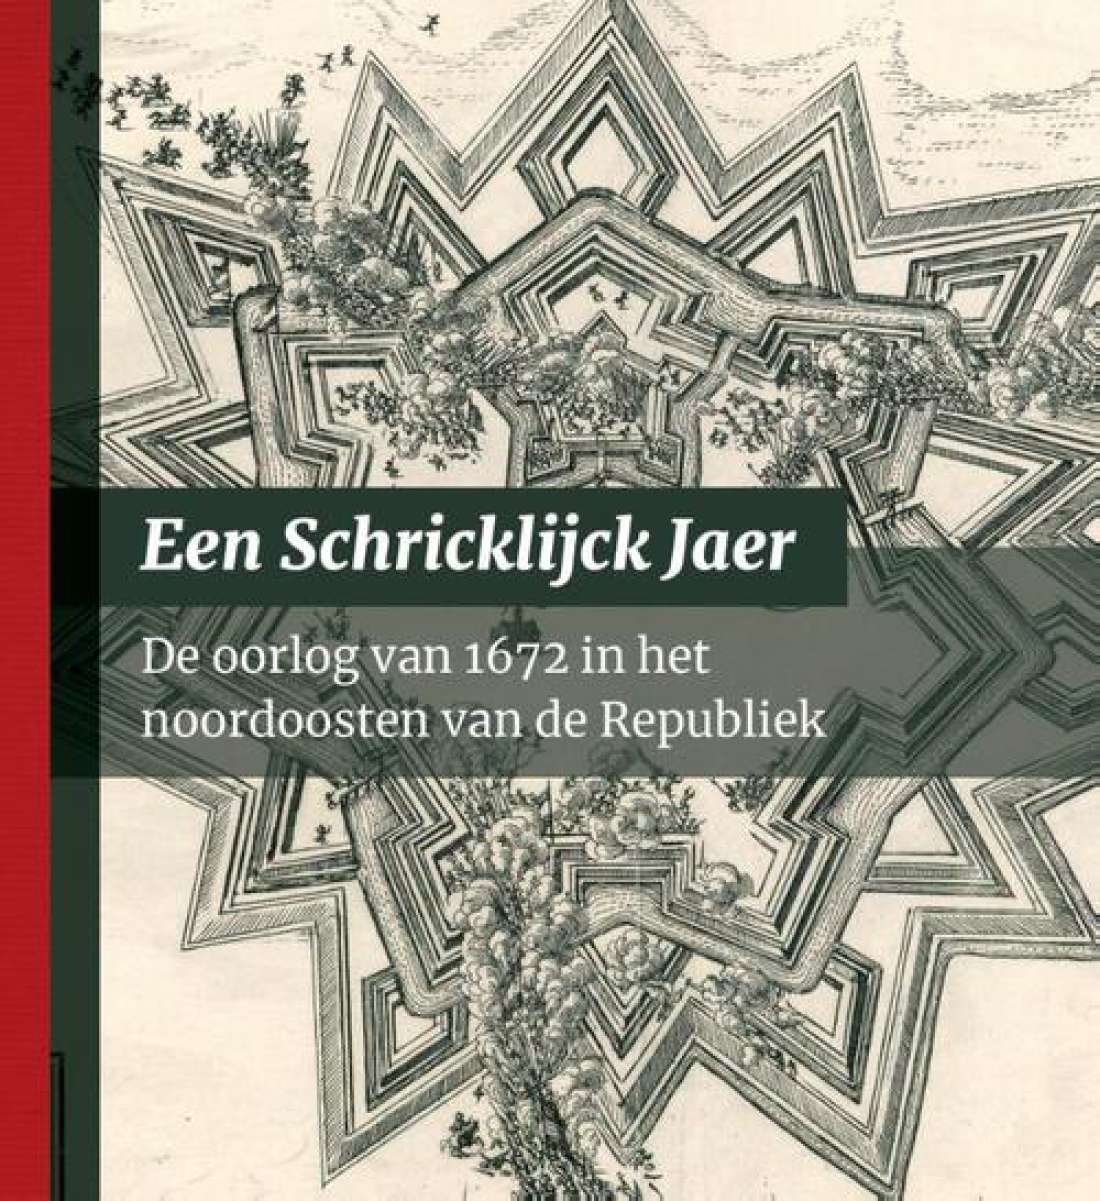 Boek: Een Schricklijck Jaer